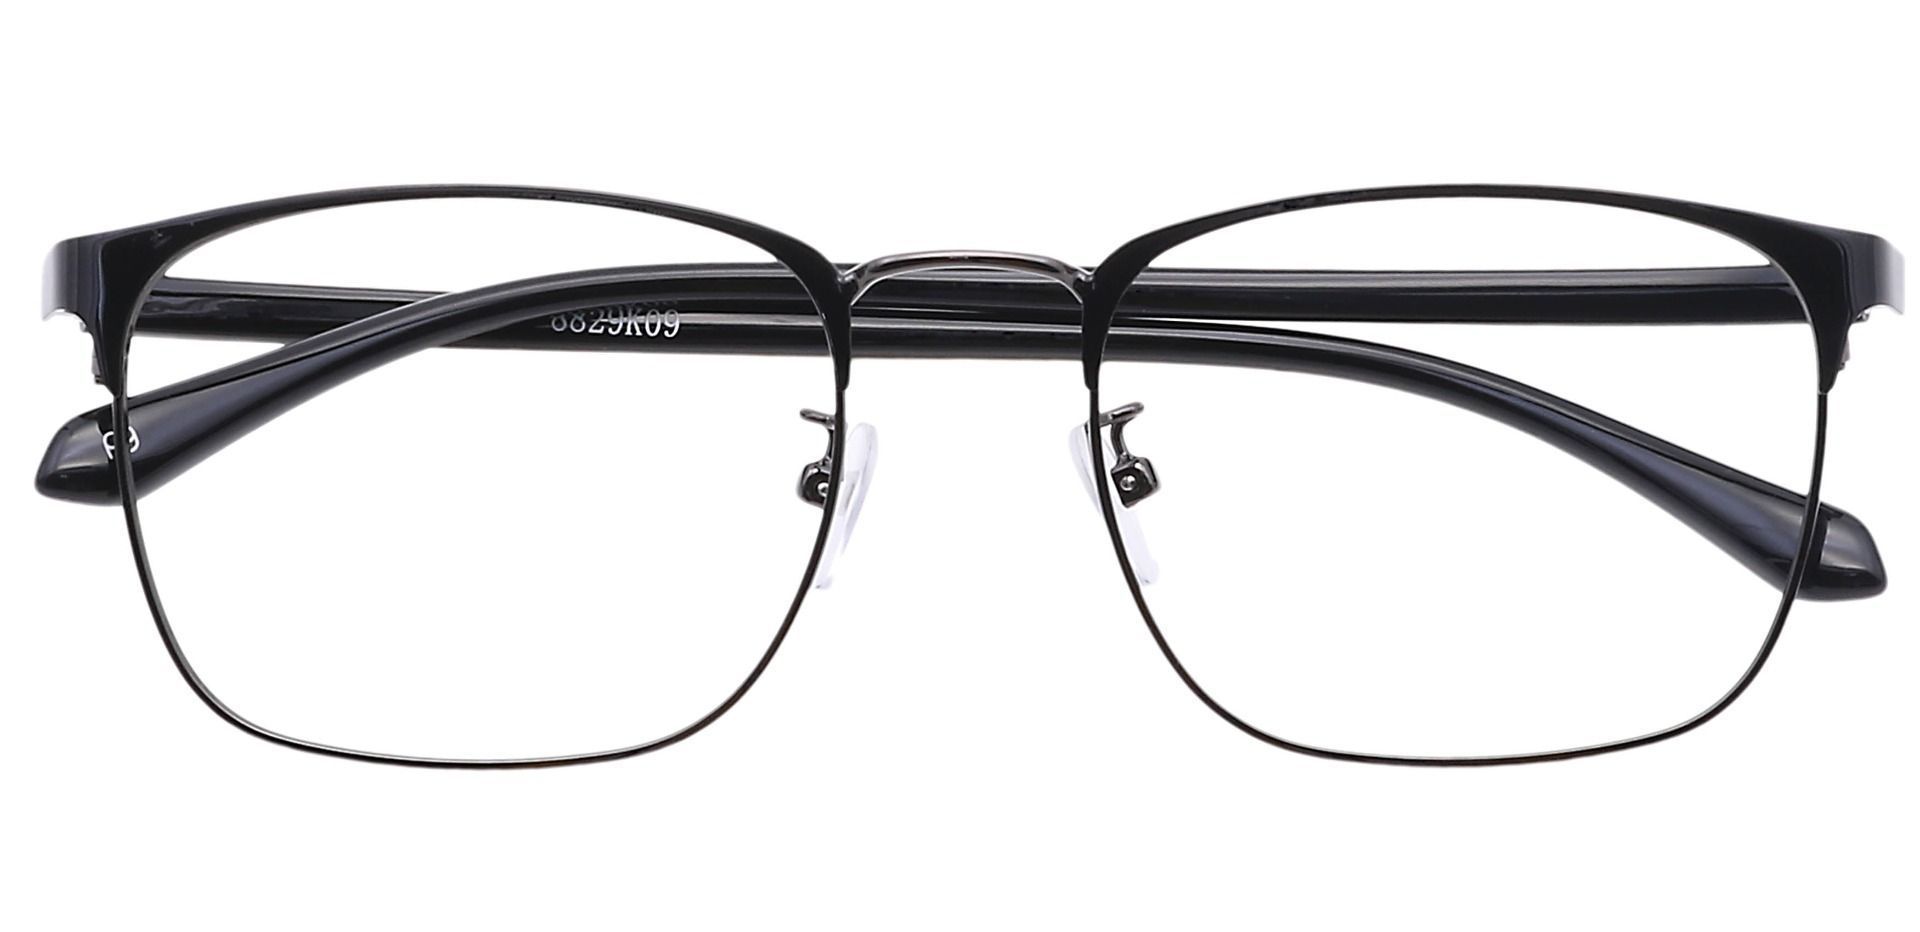 Valdez Browline Eyeglasses Frame - Black